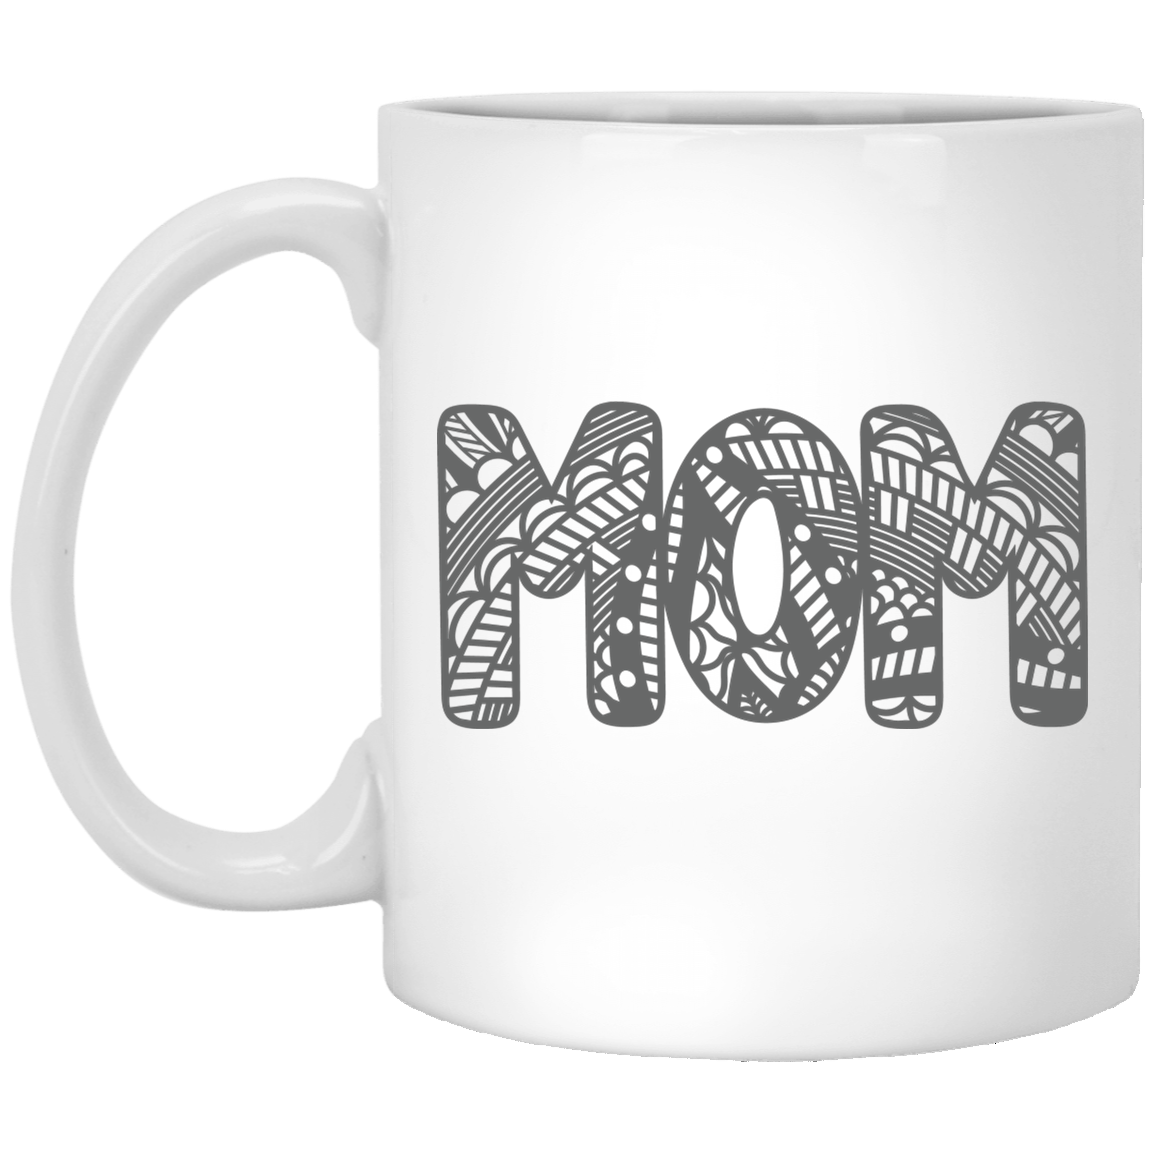 MoM 11 oz. White Mug